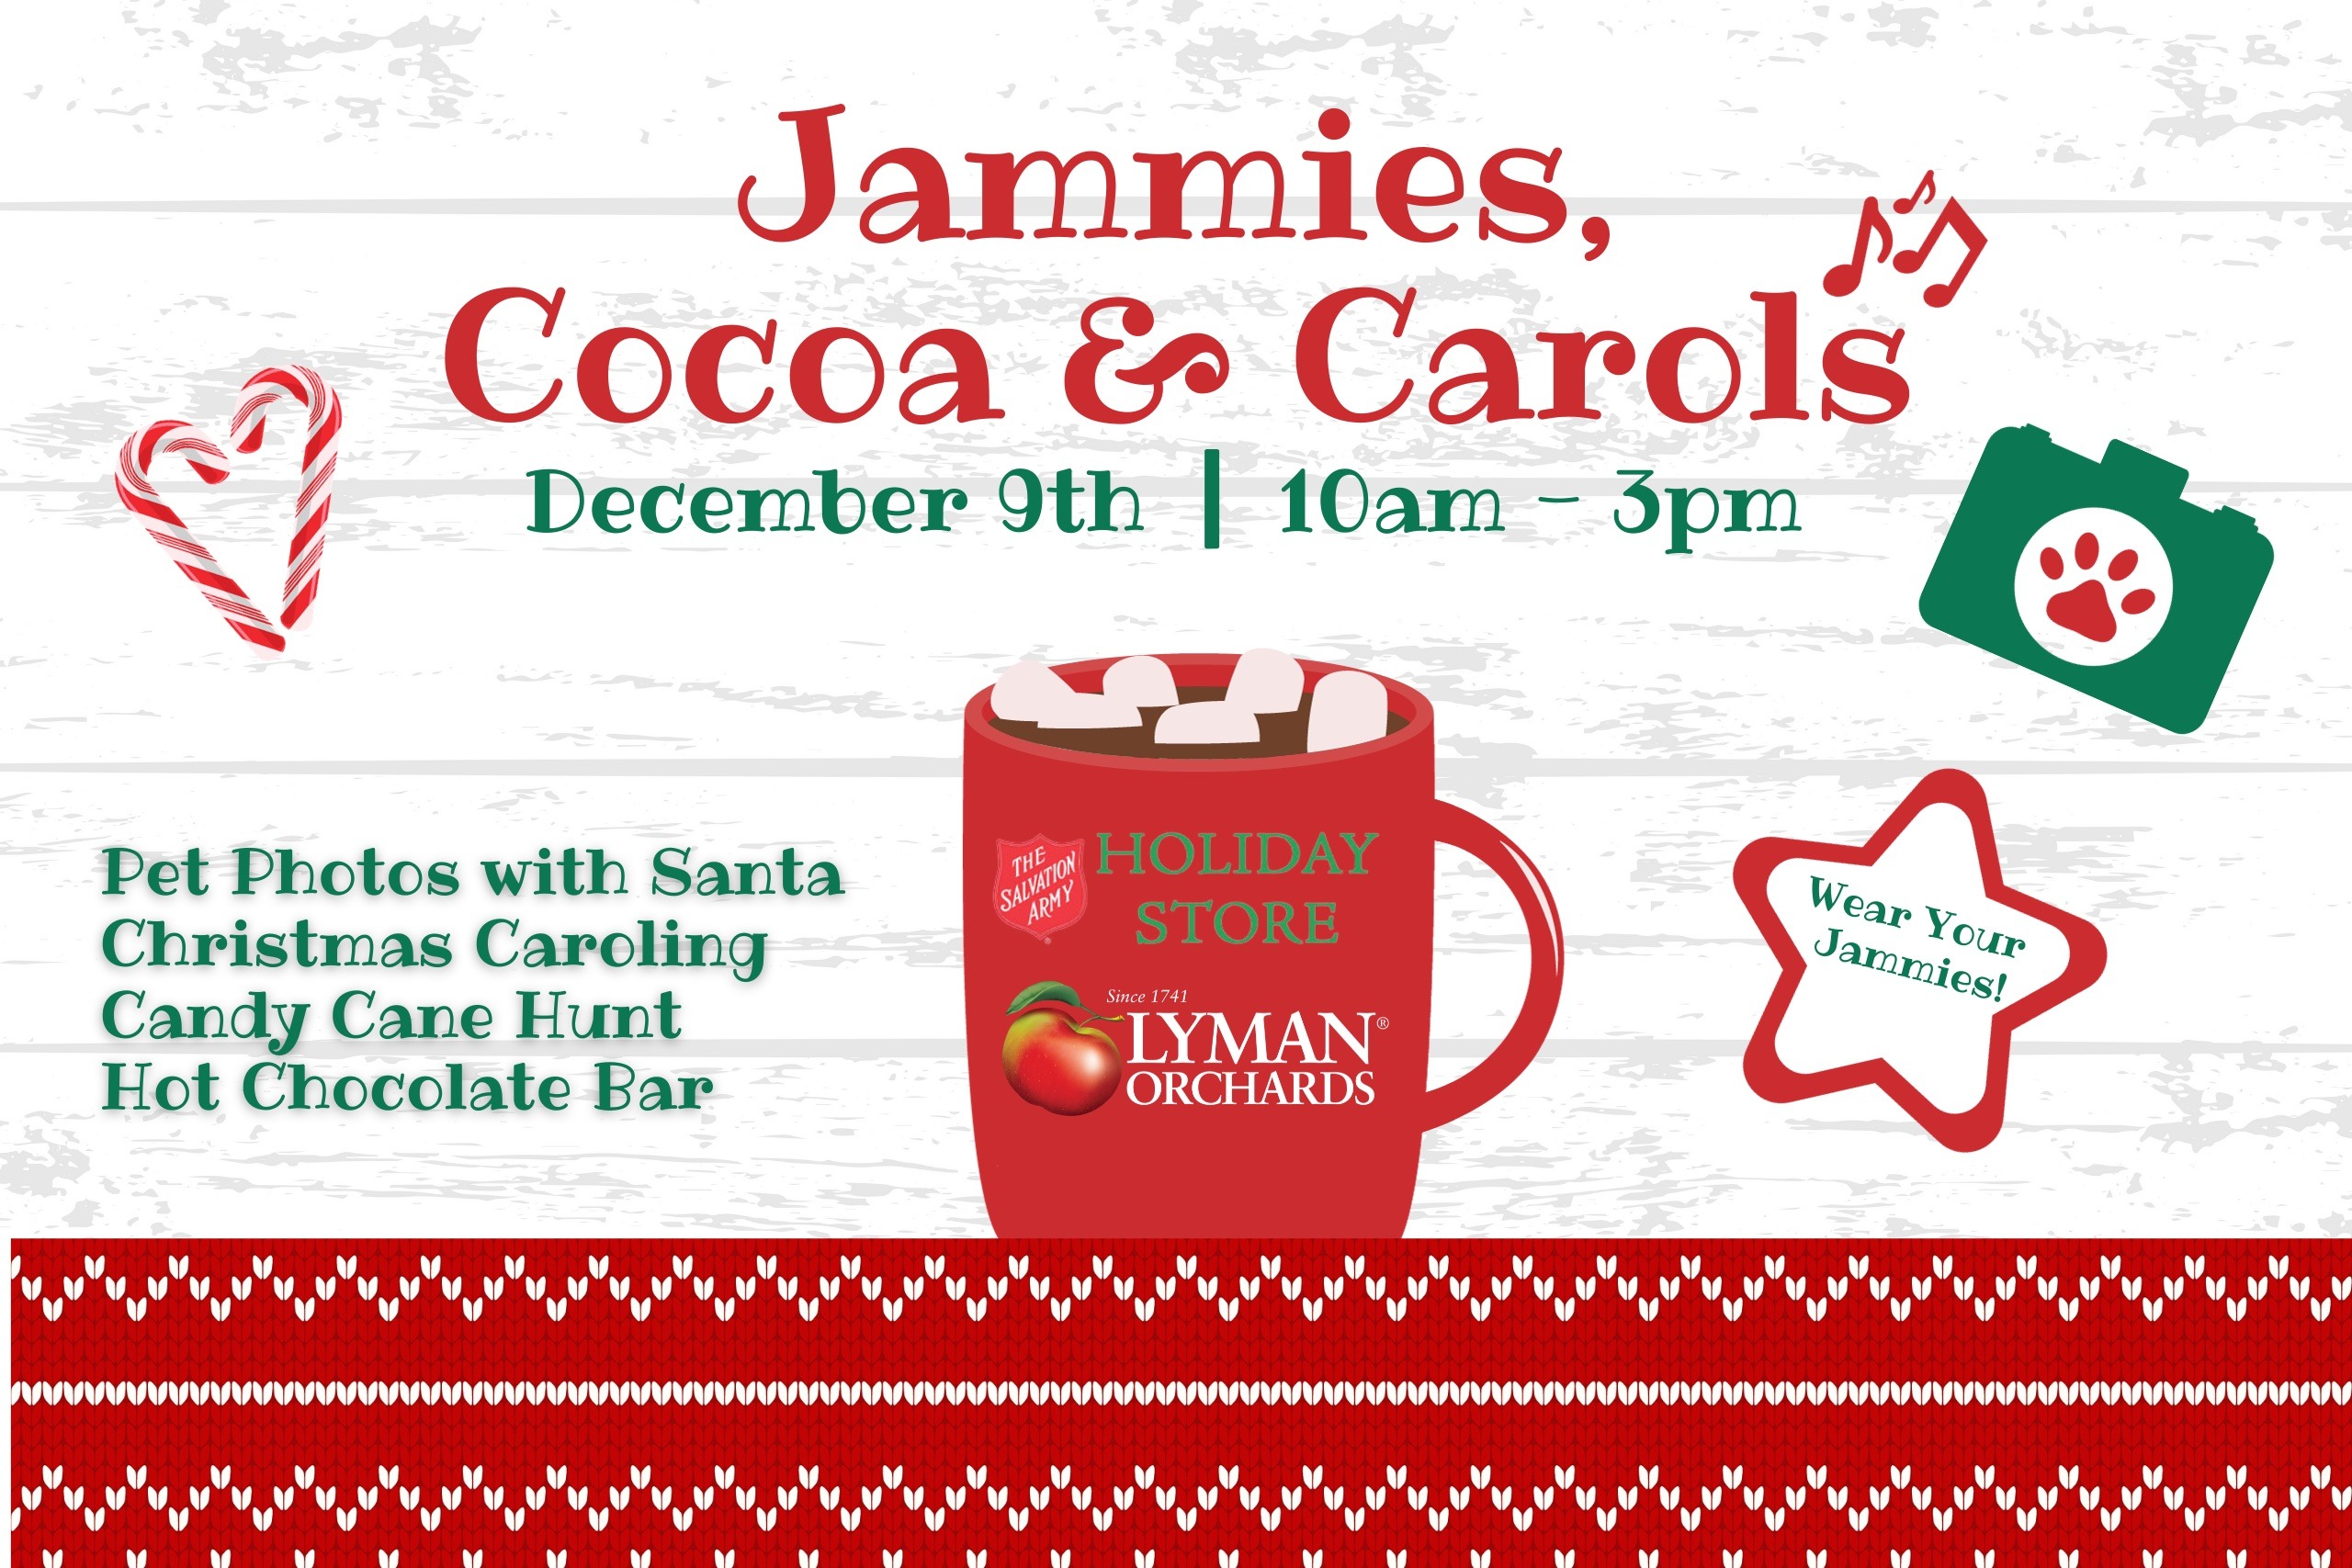 Jammies, Cocoa & Carols at Lyman Orchards